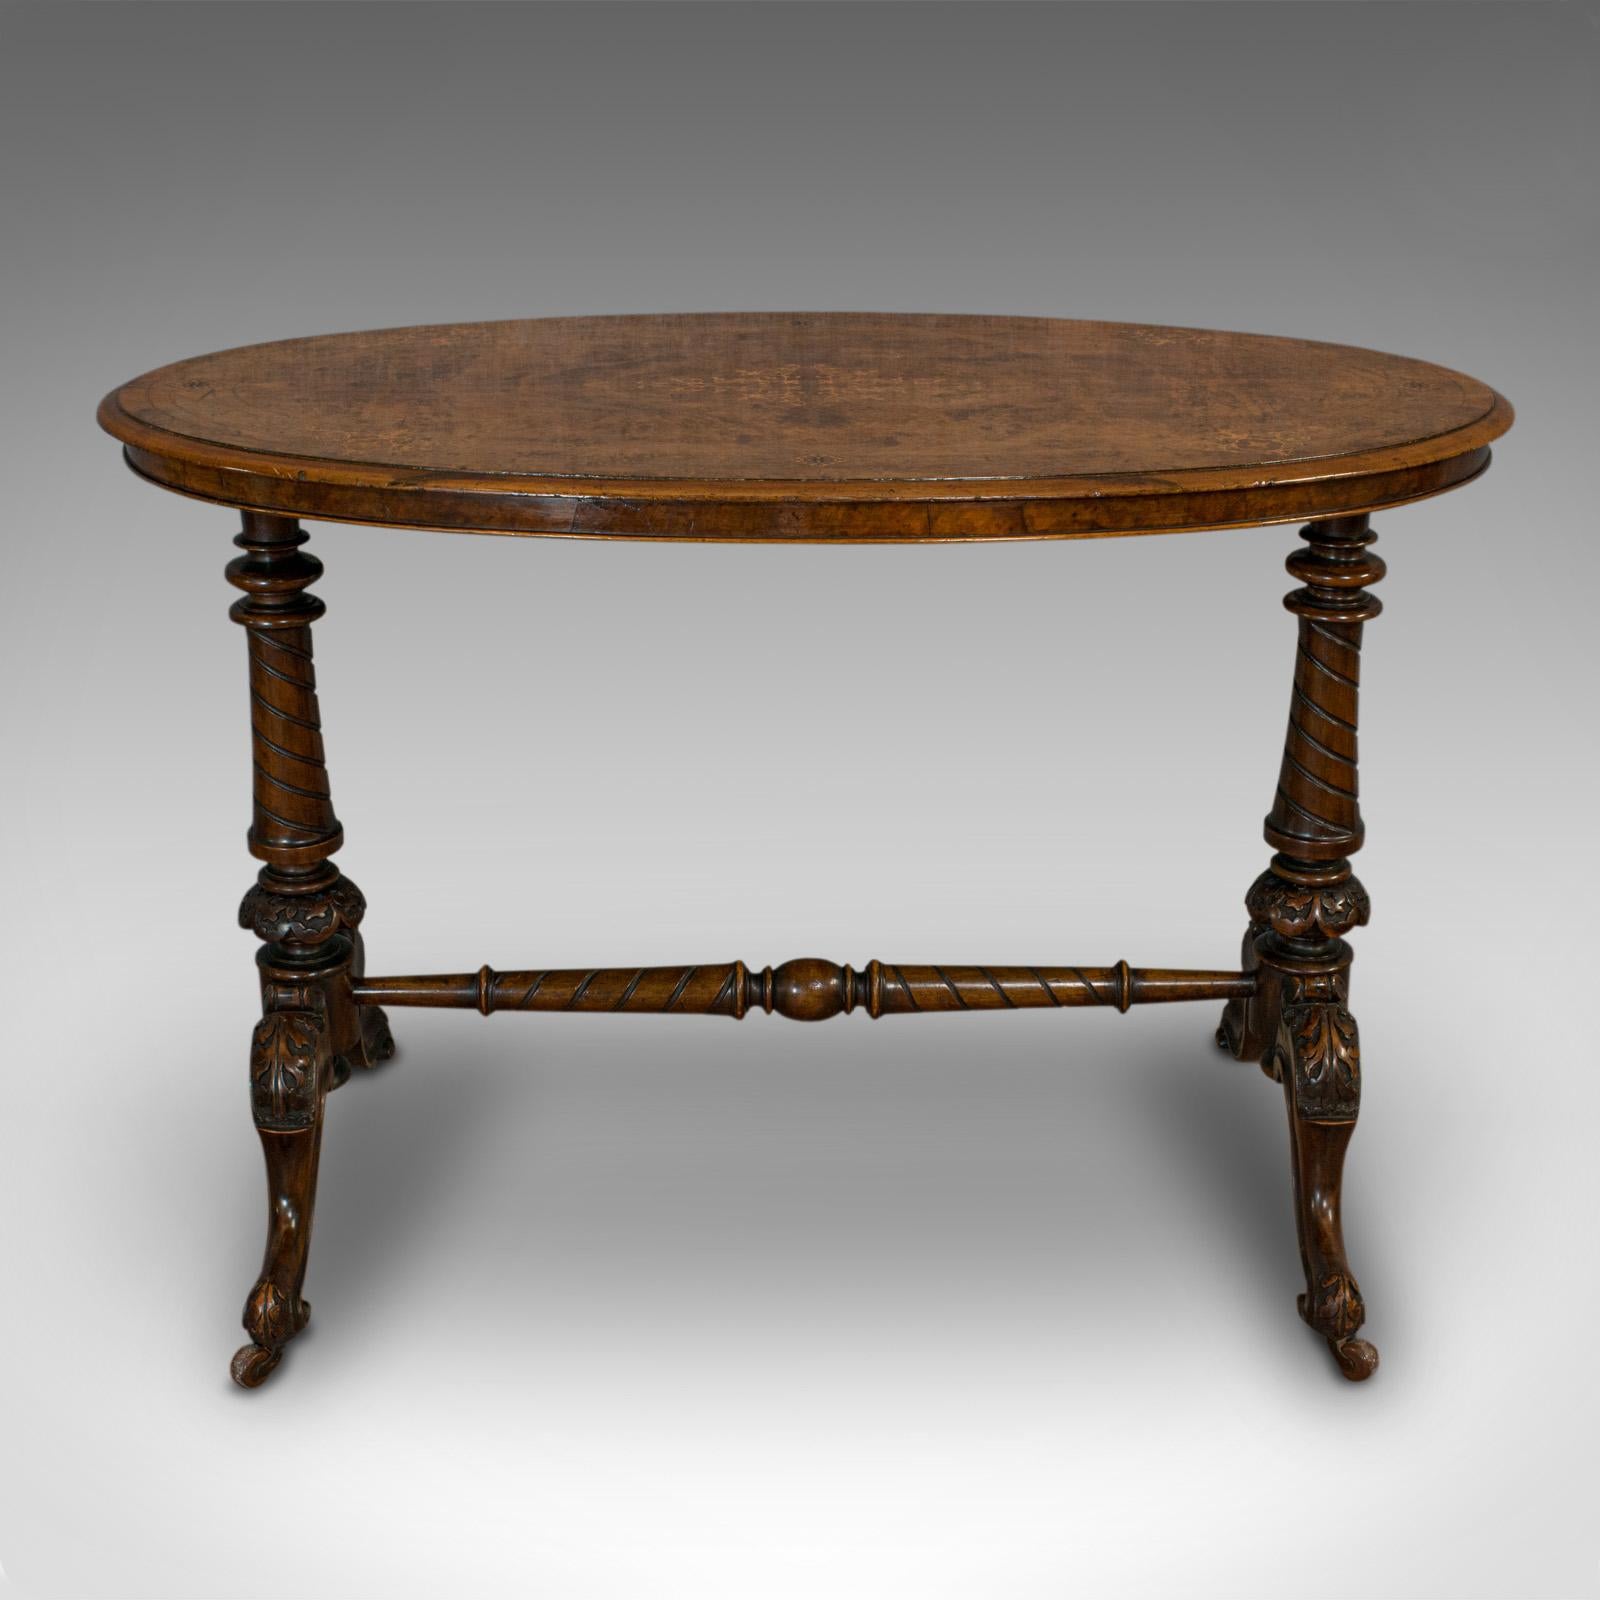 Dies ist ein antiker ovaler Tisch. Ein englischer Beistelltisch aus Wurzelnuss, aus der viktorianischen Zeit, um 1870.

Schöne Maserung und Handwerkskunst
Zeigt eine wünschenswerte gealterte Patina
Gratnussbaum zeigt feines